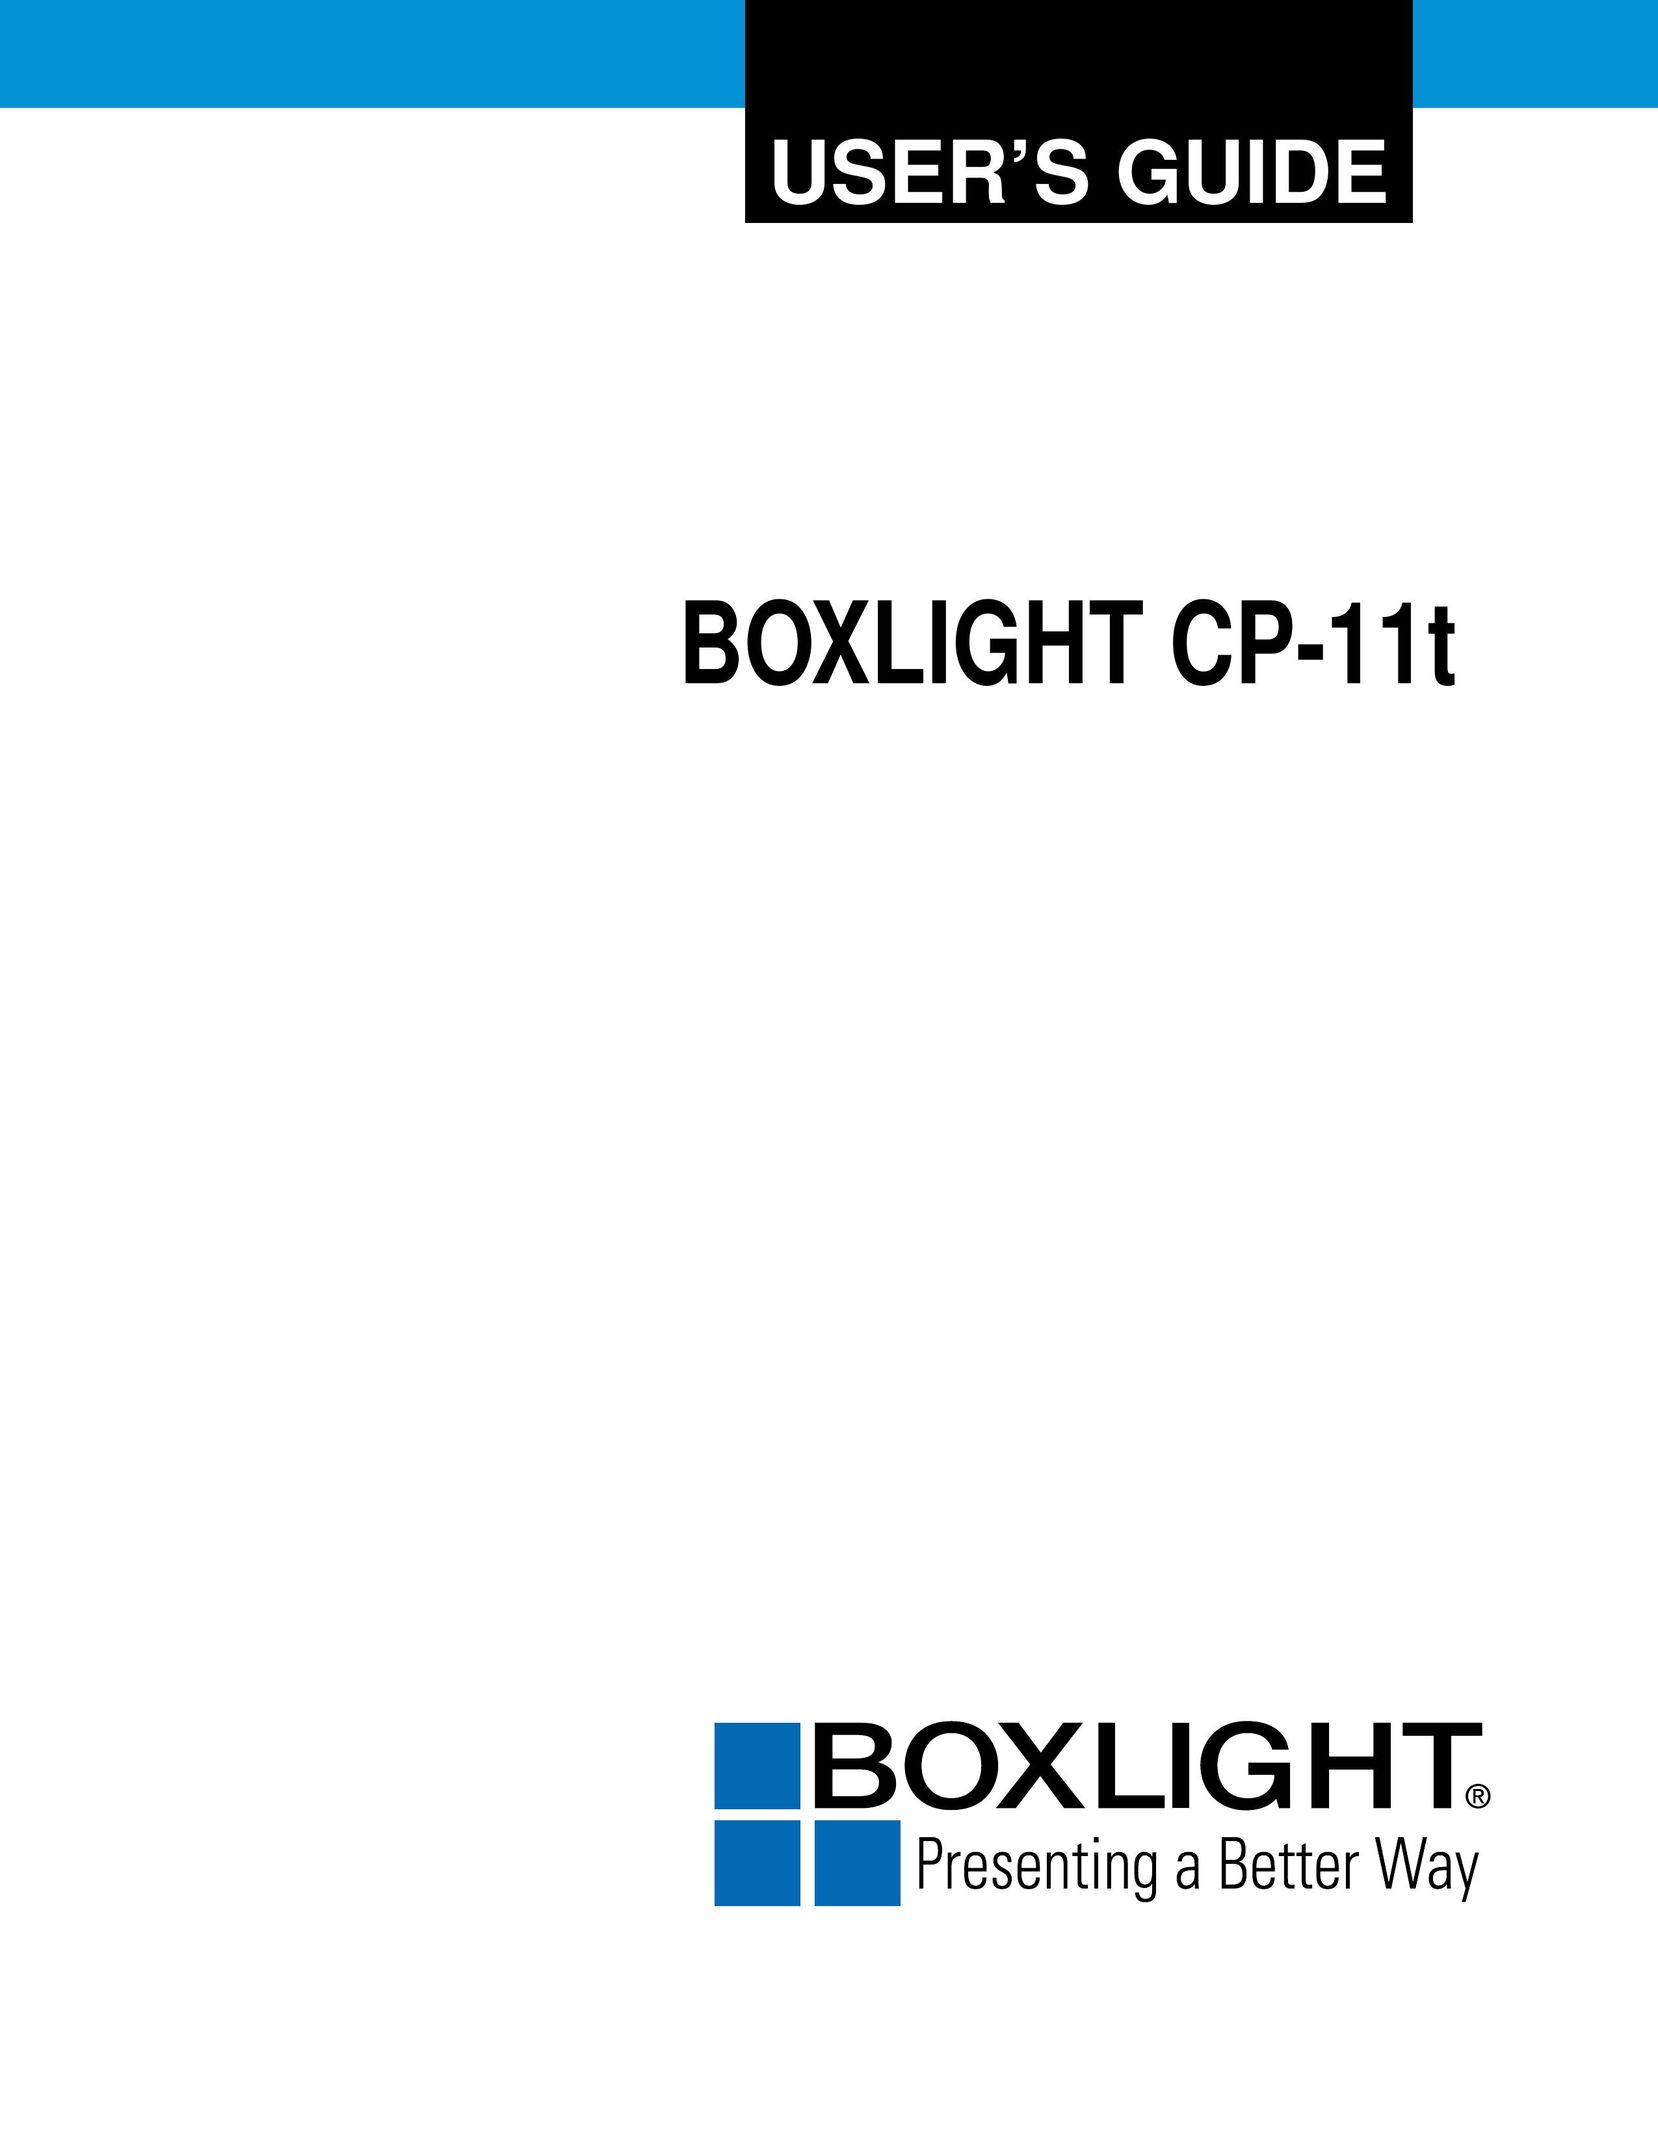 BOXLIGHT CP-11t Projector User Manual